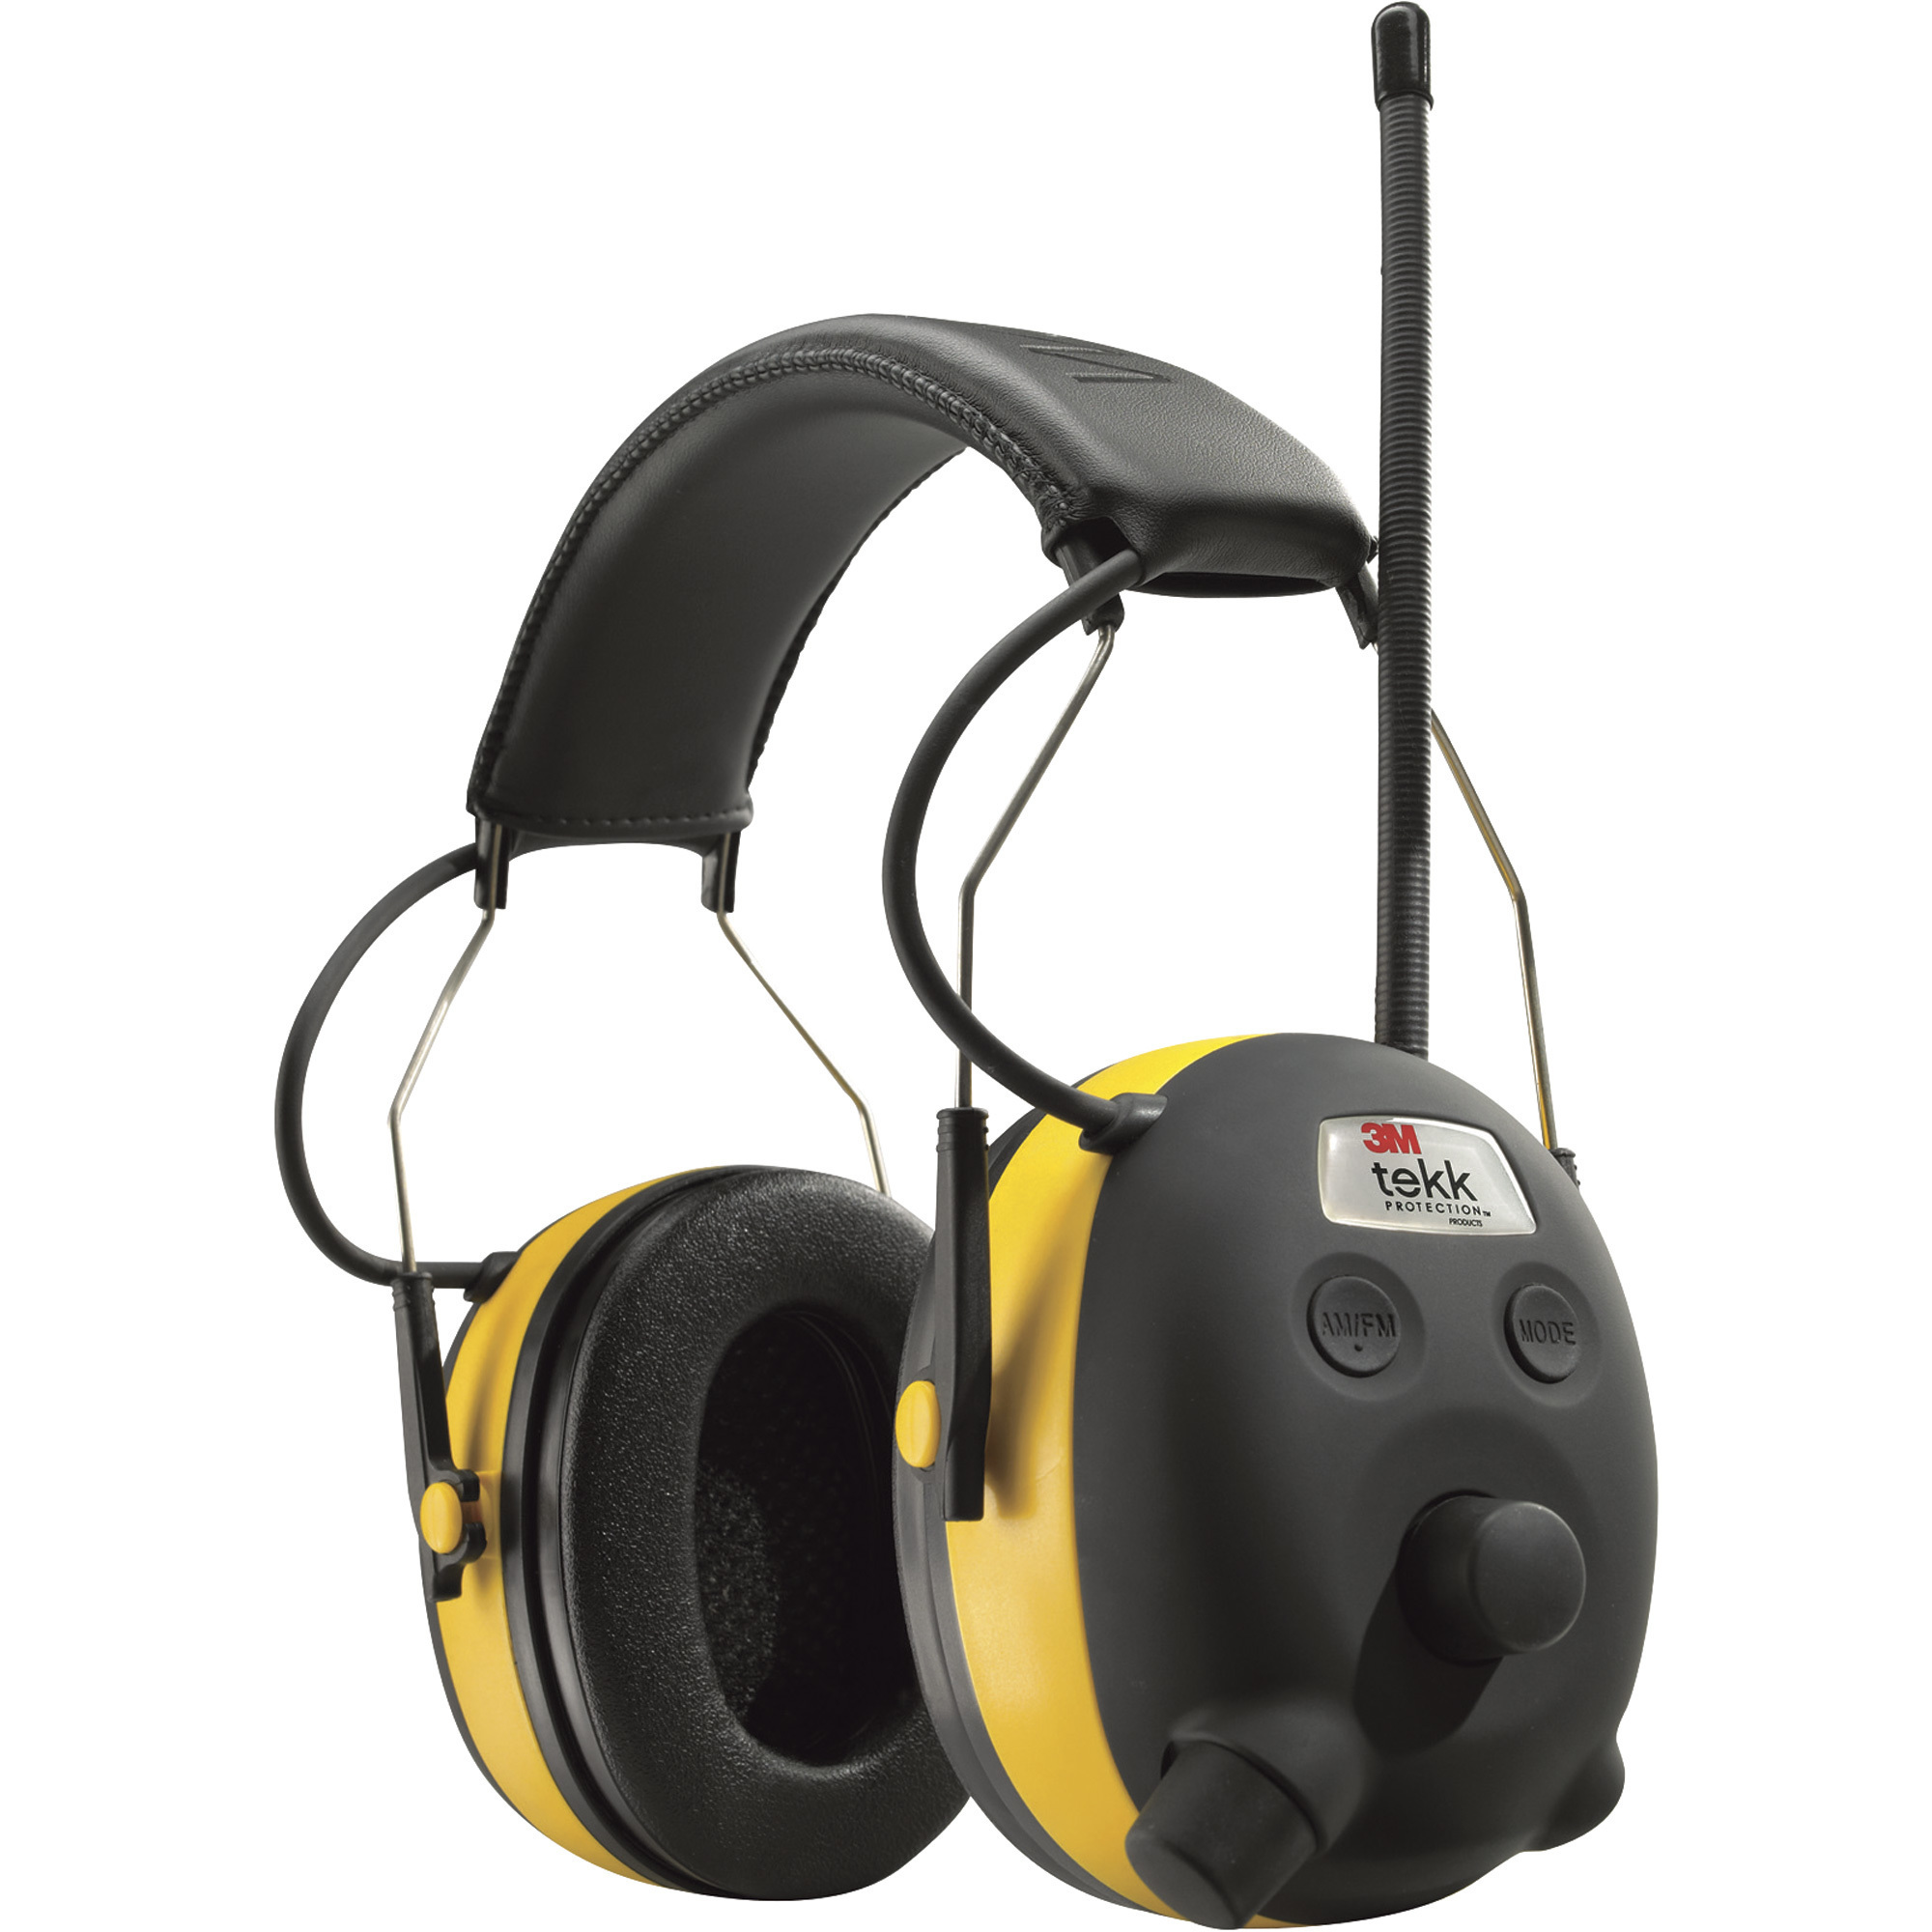 3M Digital WorkTunes Hearing Protector with AM/FM Radio/MP3, NRR 24dB,  Model# 90541-80025V